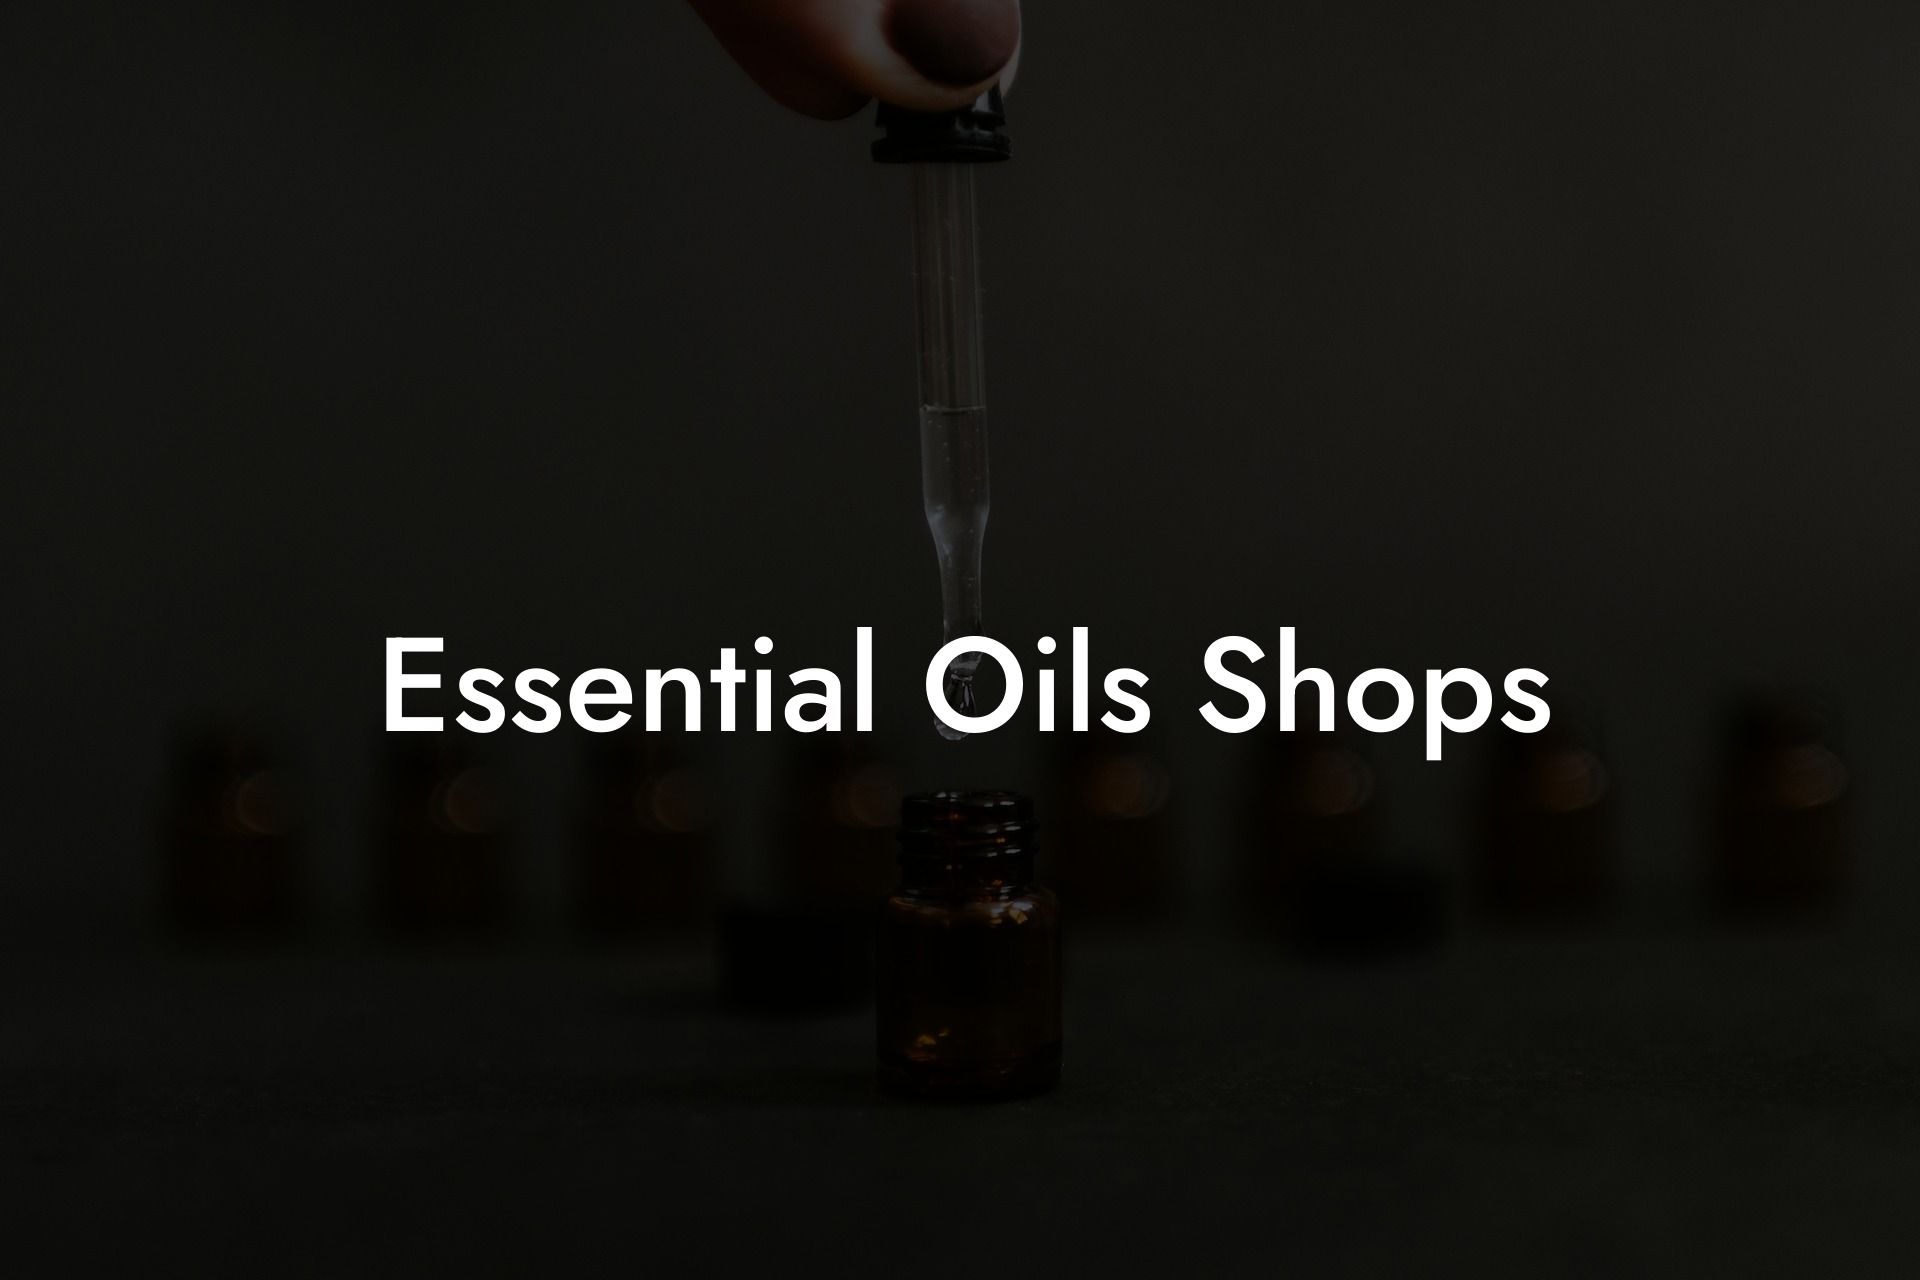 Essential Oils Shops